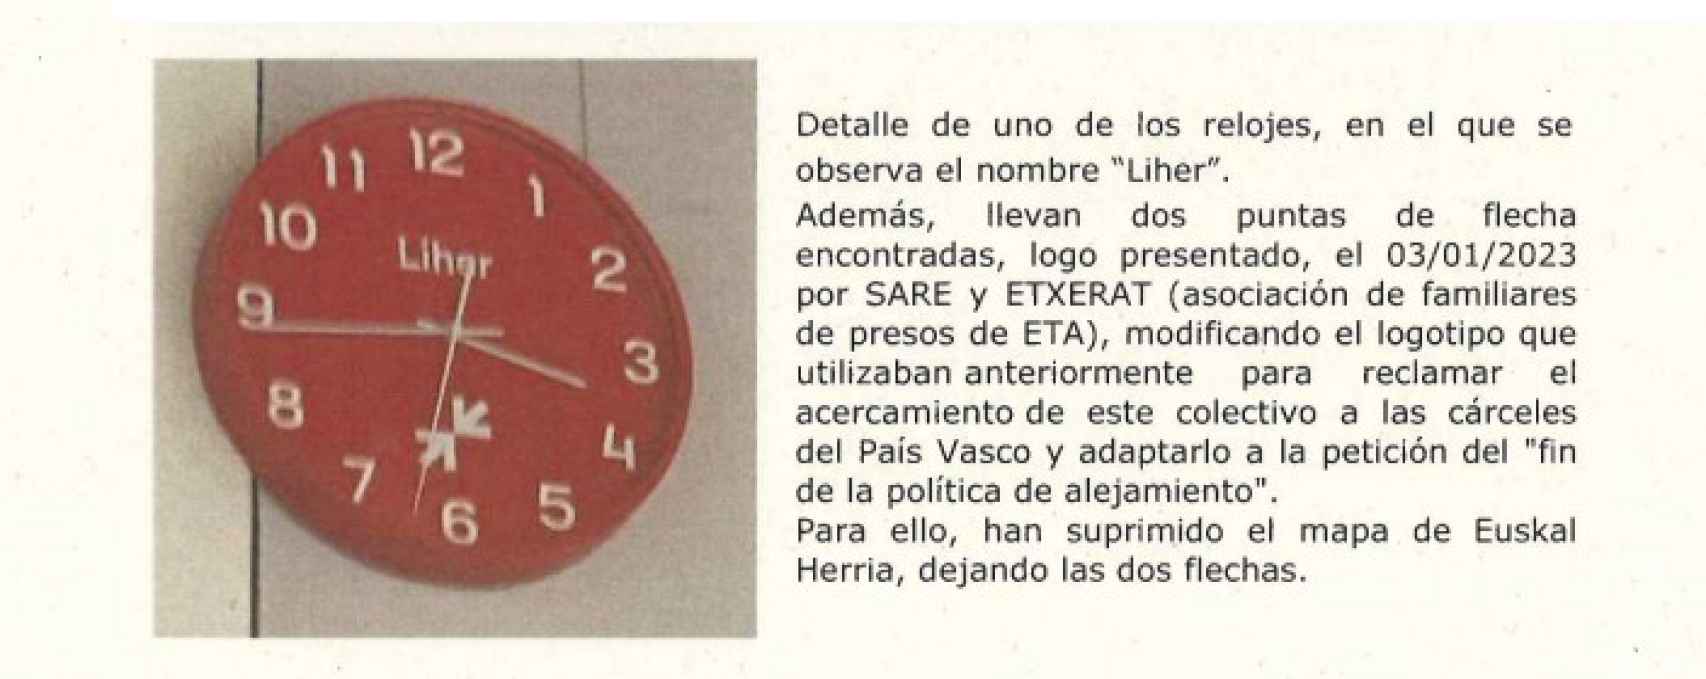 Fragmento del informe de la Ertzaintza sobre los 19 relojes exhibidos en la caseta.